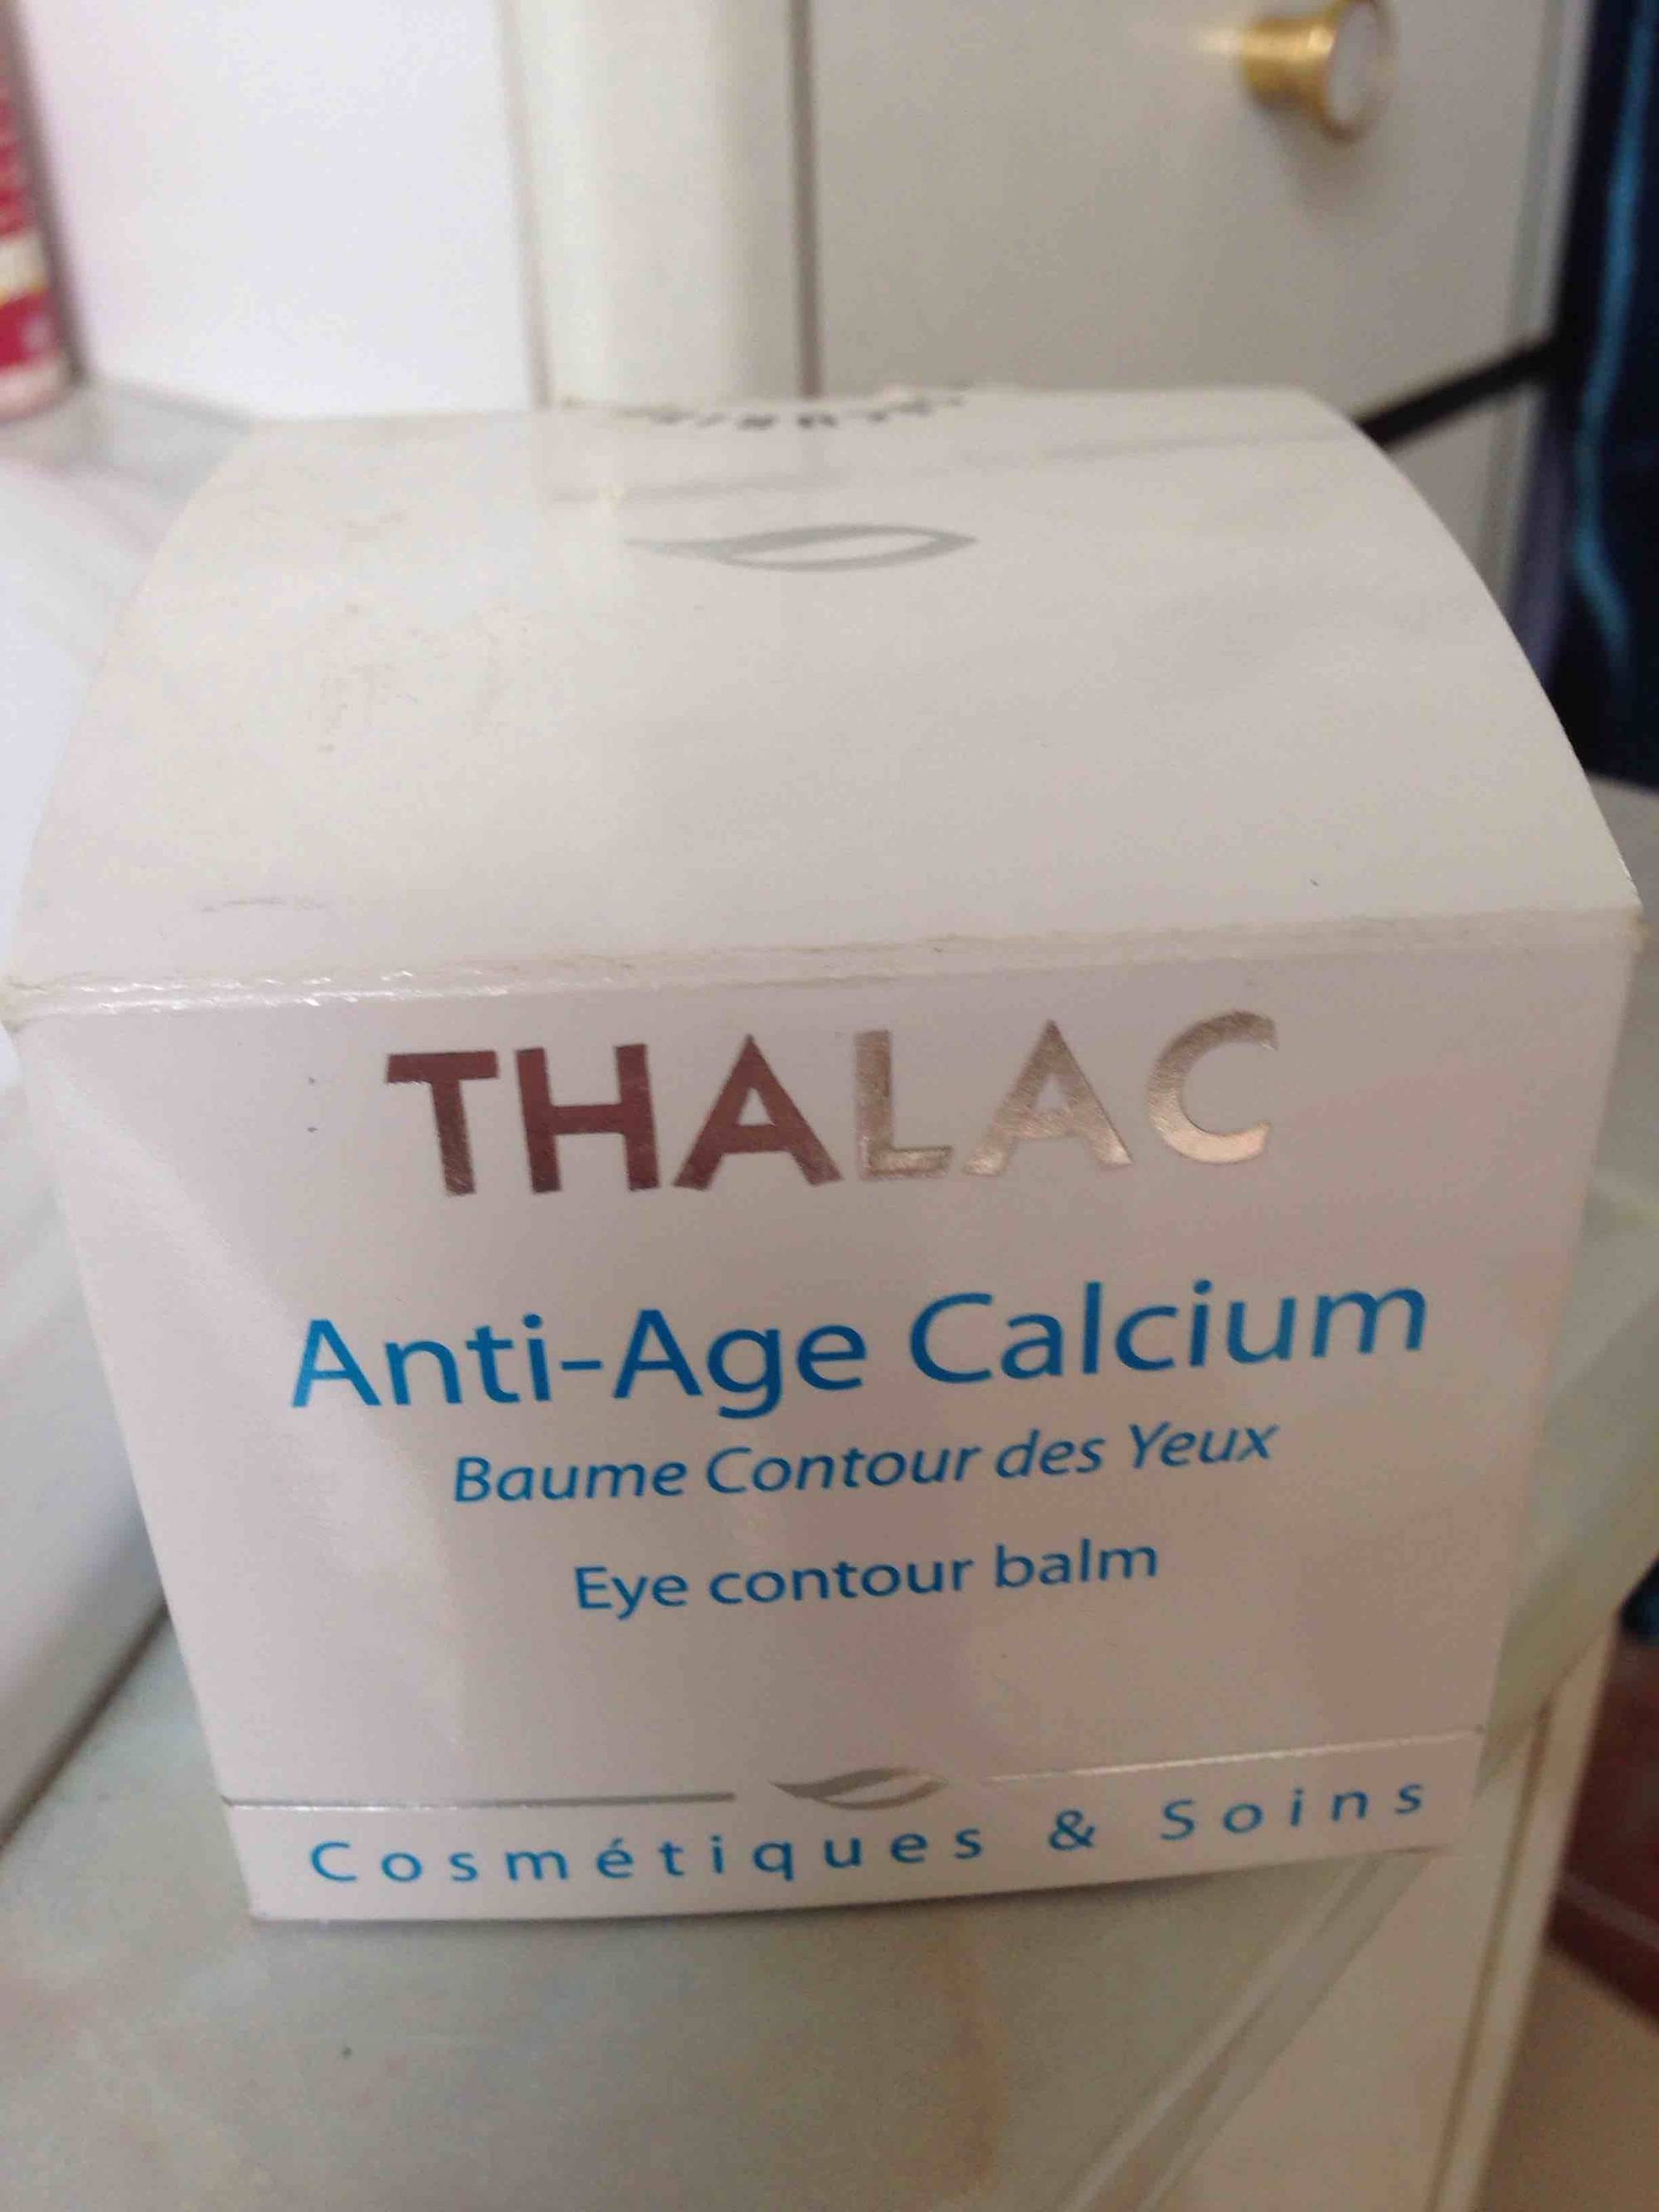 THALAC - Anti-age calcium - Baume contour des yeux